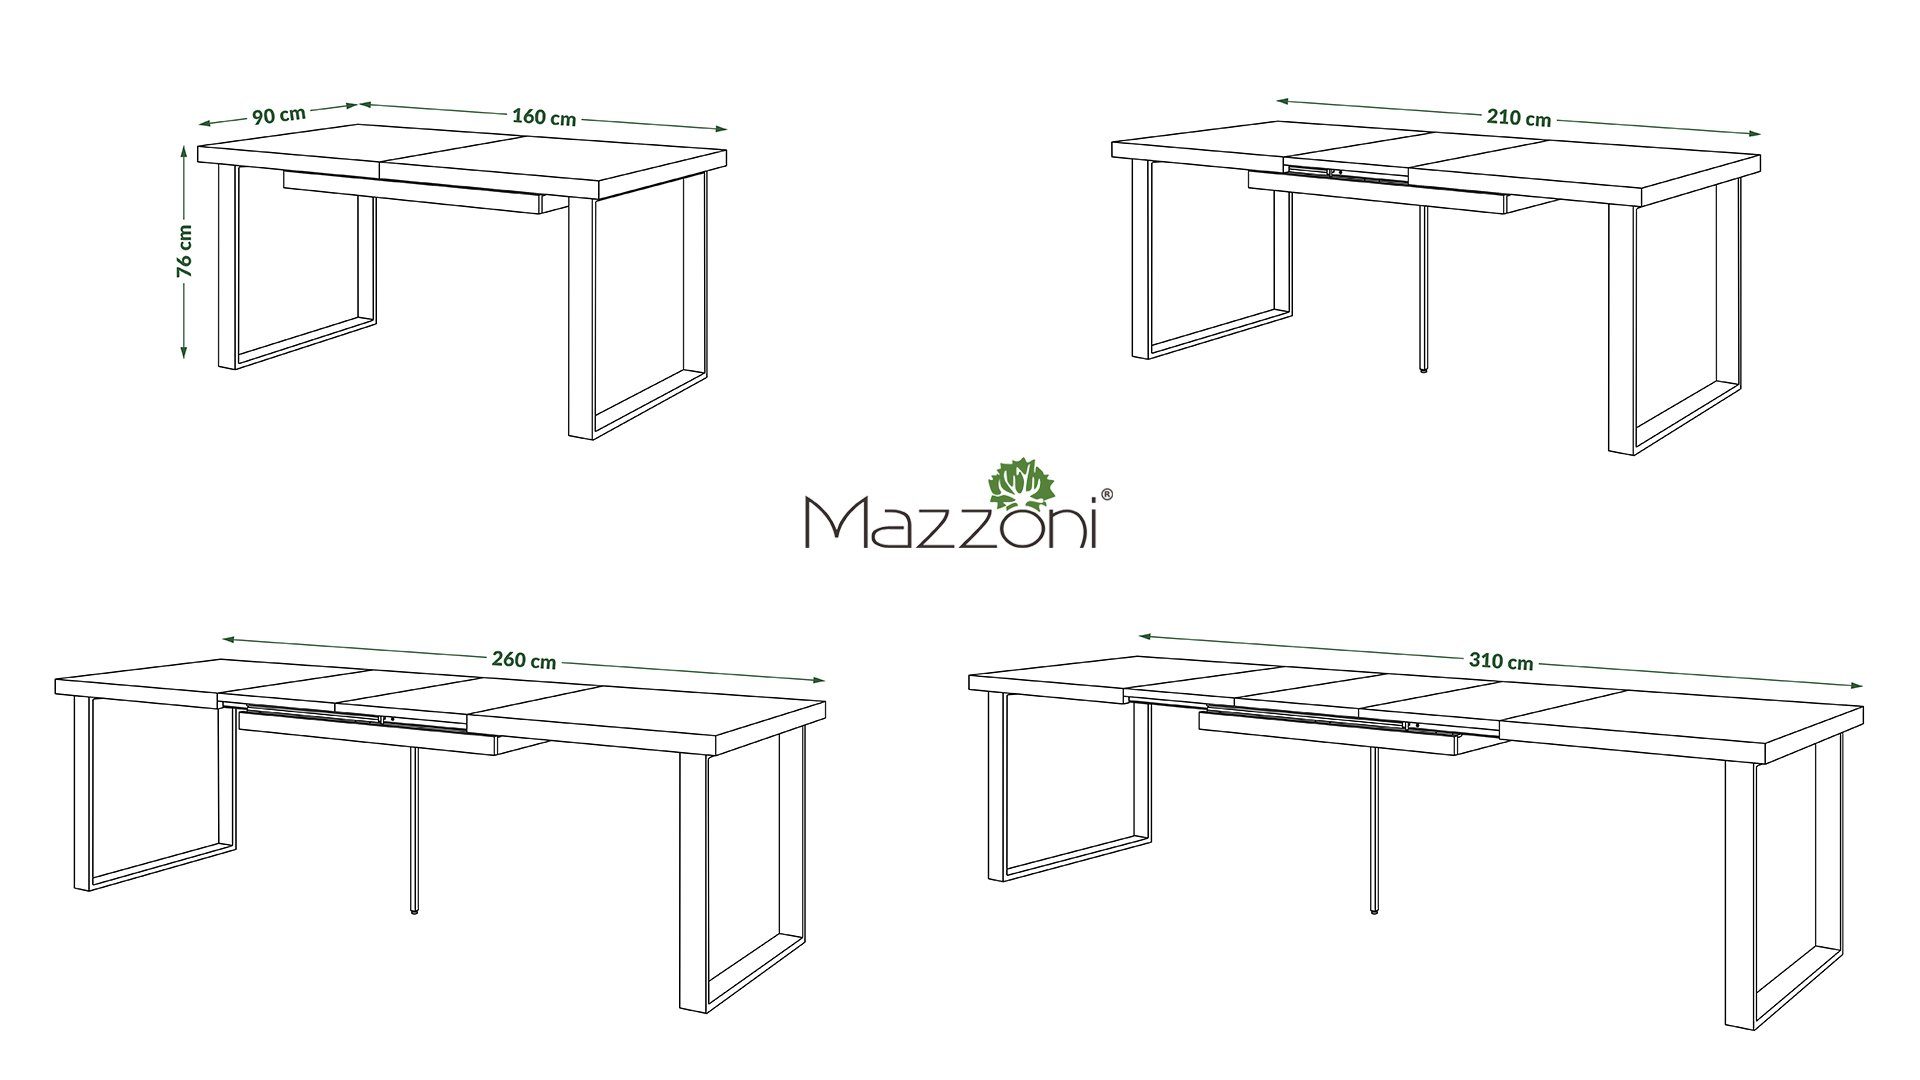 ausziehbar Eiche matt Design - Avella Mazzoni 310 Schwarz gold Esstisch Esstisch 160 cm Tisch bis